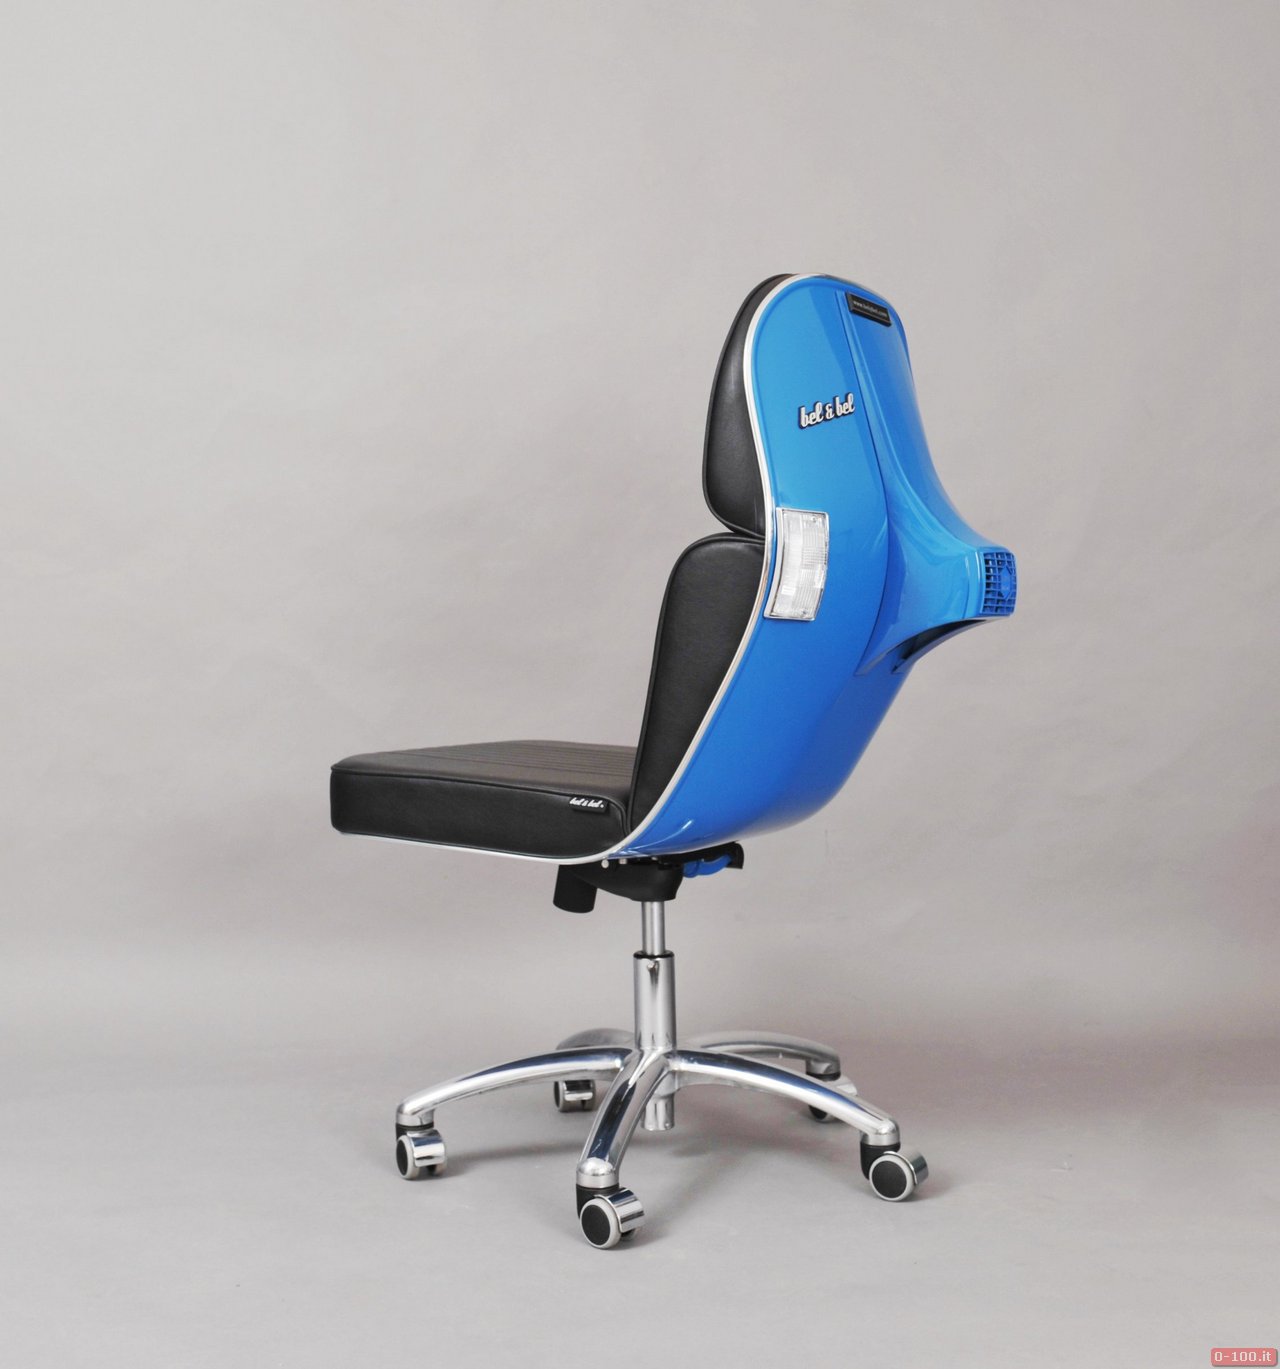 Vespa office chairs by Bel &Bel_0-100_2